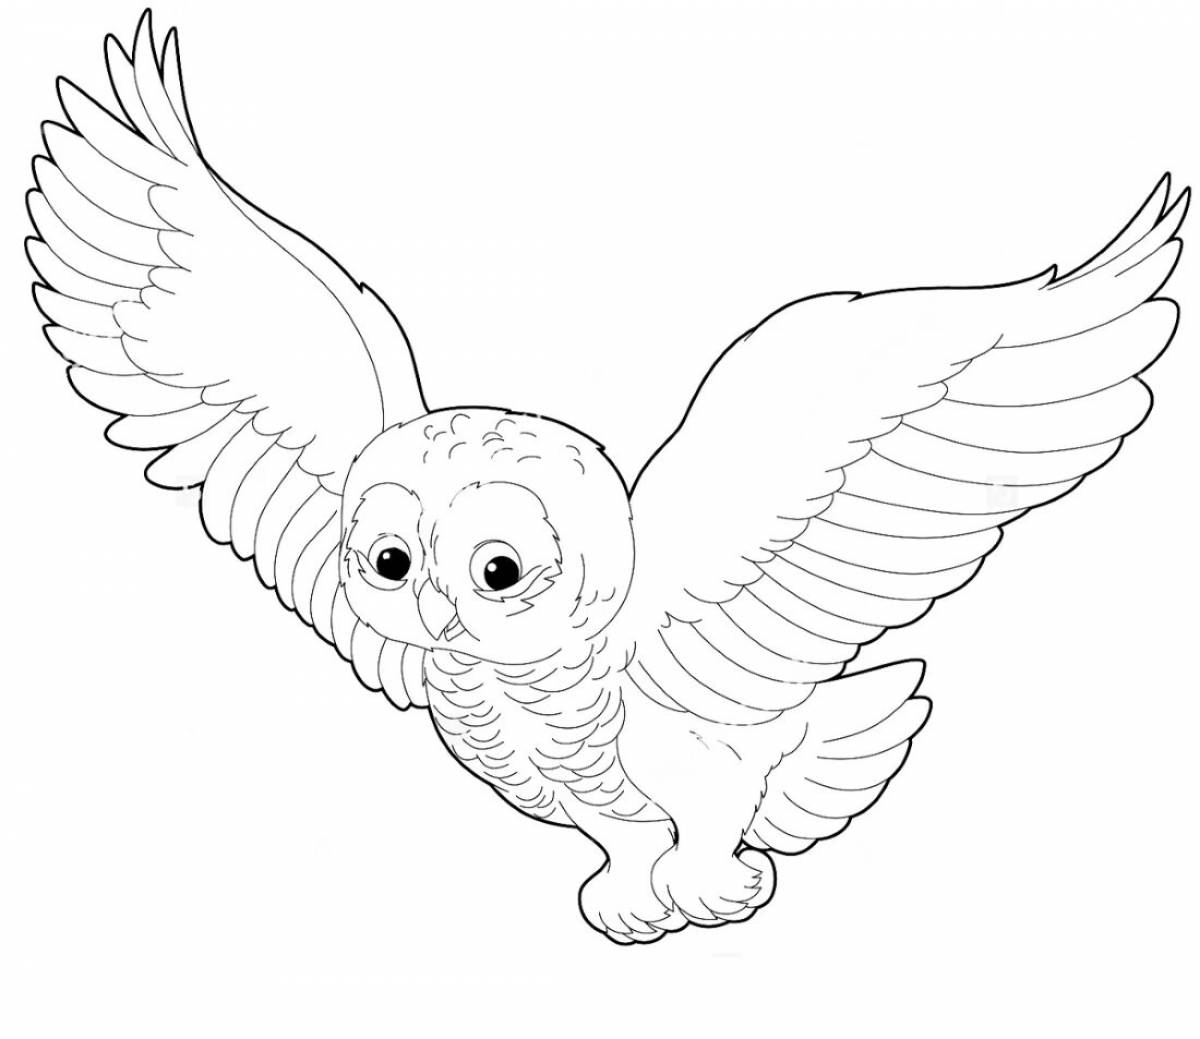 Увлекательная раскраска «полярная сова» для детей